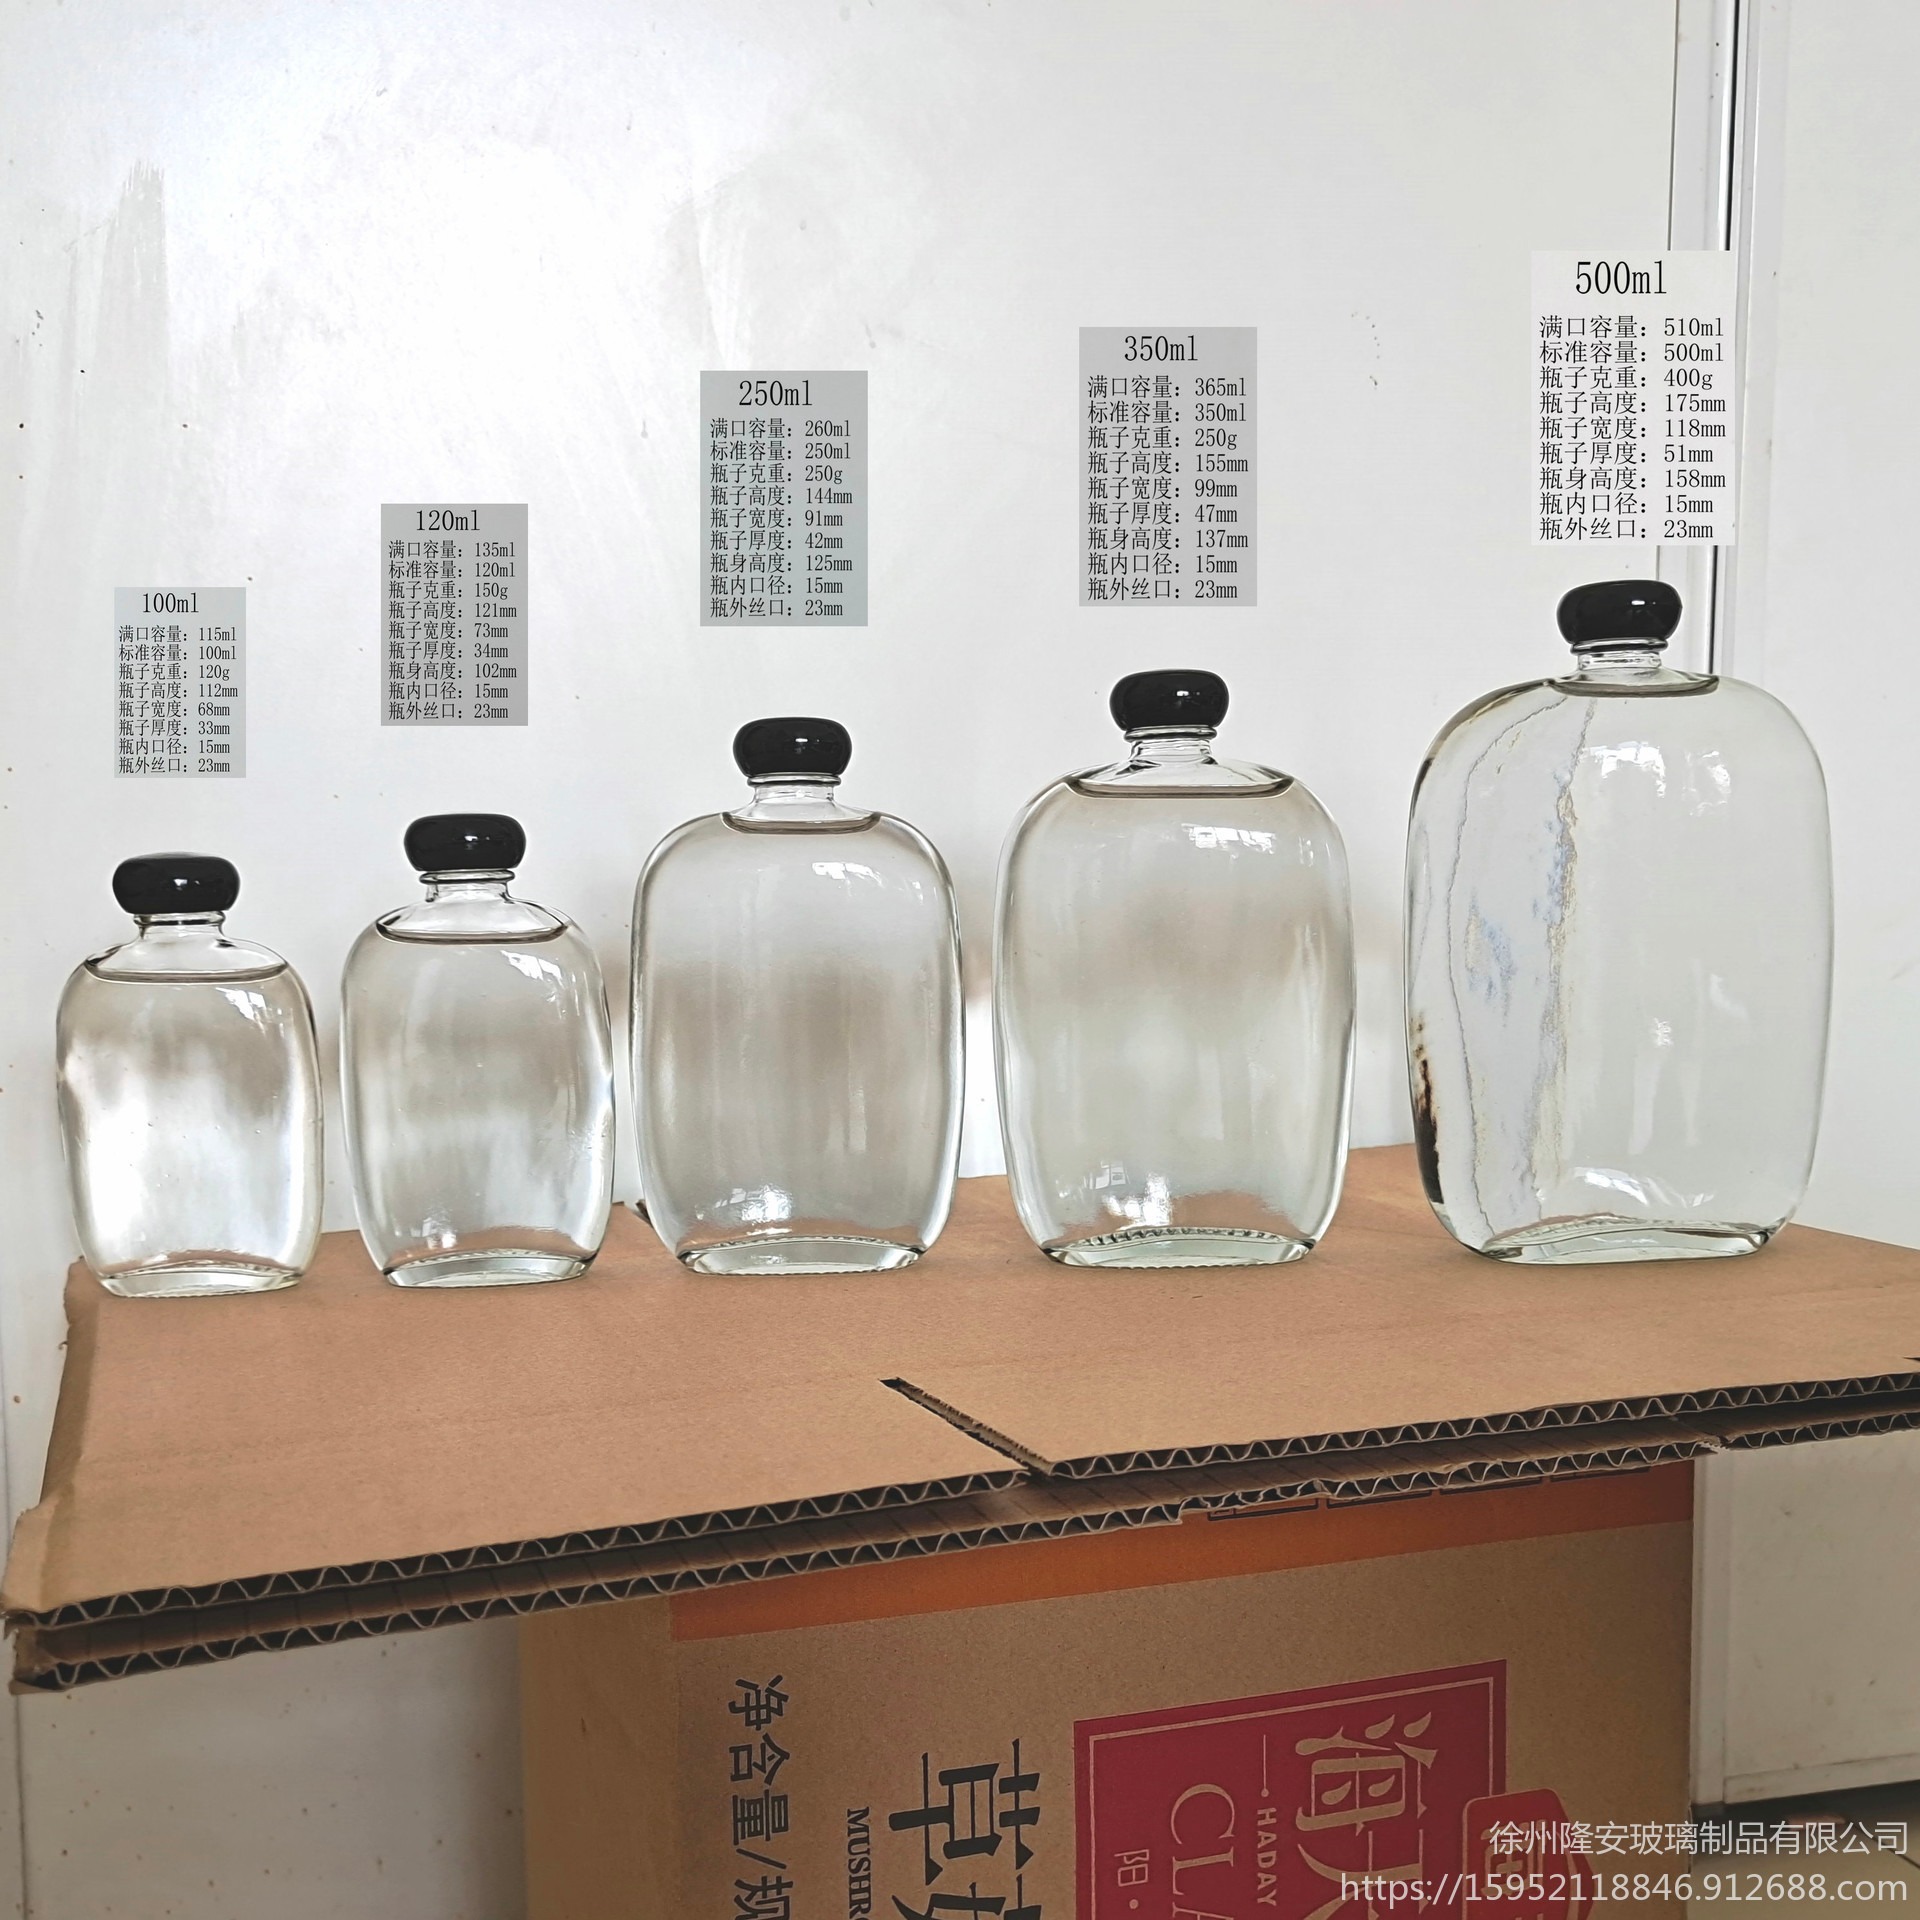 新款玻璃酒瓶100ml白酒玻璃瓶食品包装玻璃制品生产商隆安酒瓶生产商批发订购125ml250ml350ml500ml